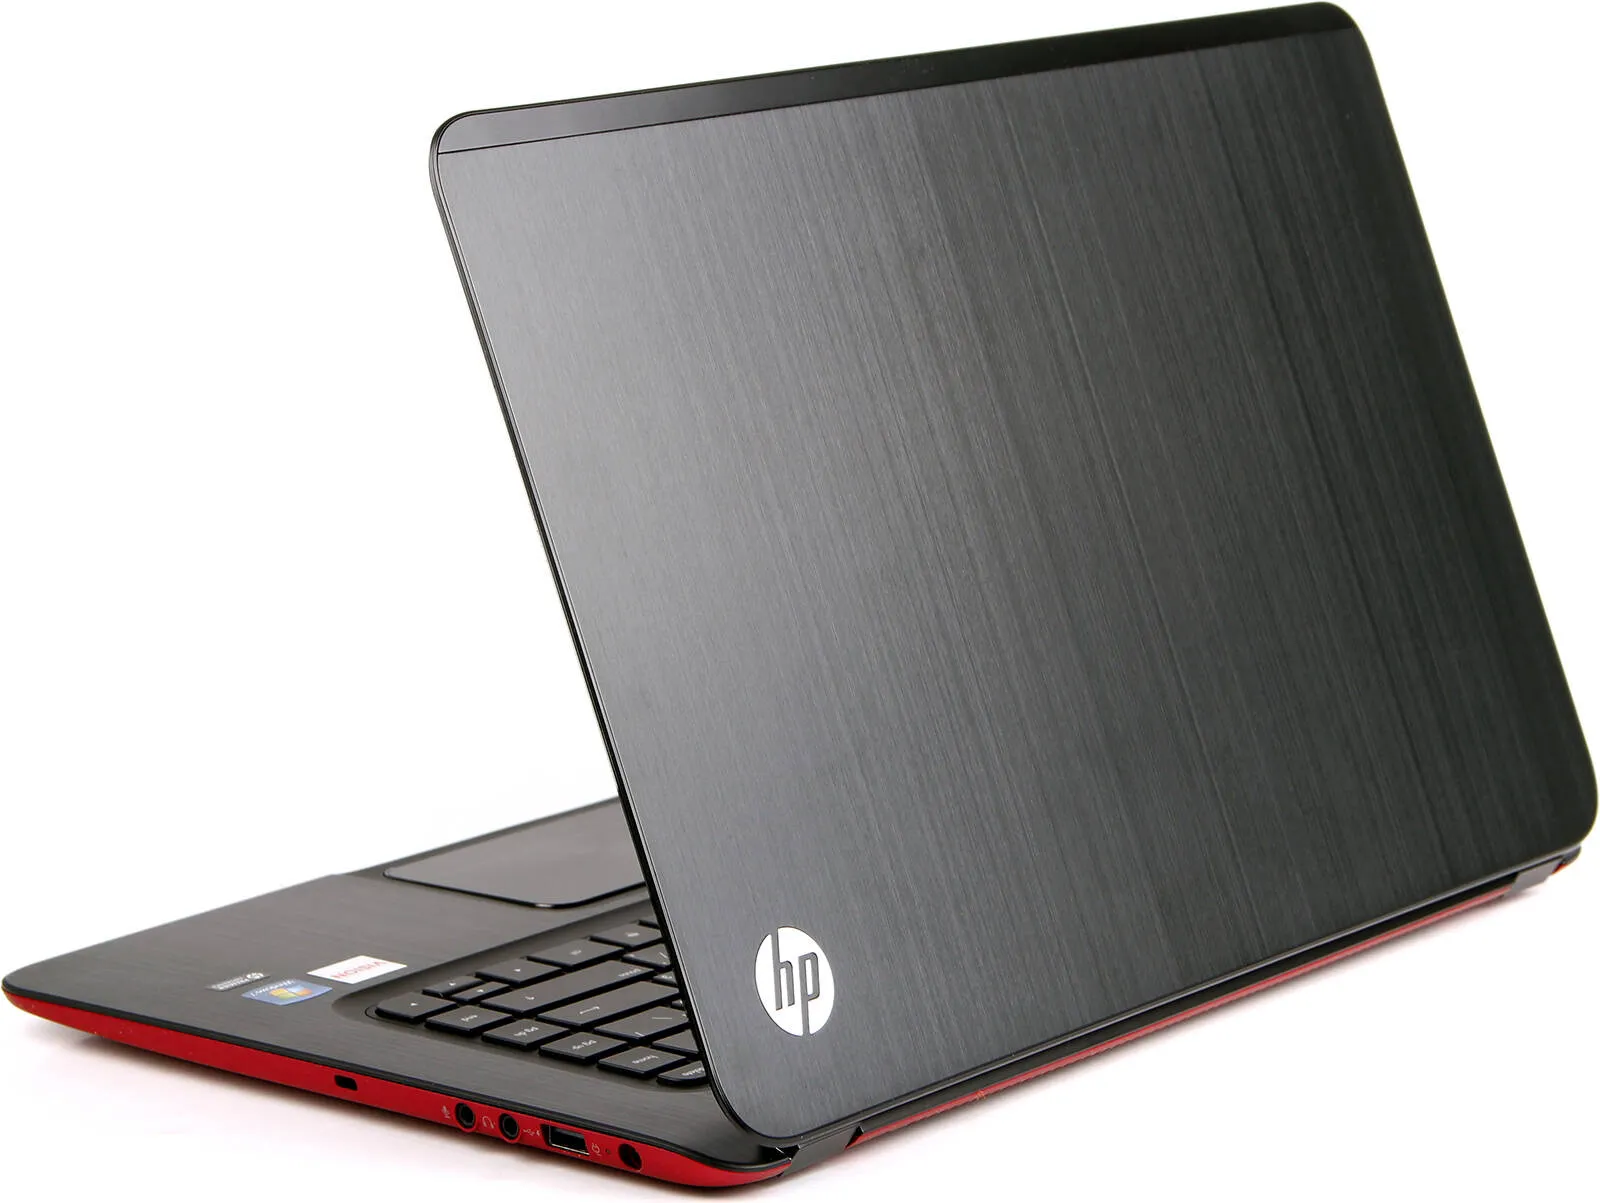 Ноутбук HP 250 G5 /Intel i3-5005U/4 GB DDR3/ 500GB HDD /15.6" HD LED/2GB AMD Radeon R5 M430/ DVD / RUS#7